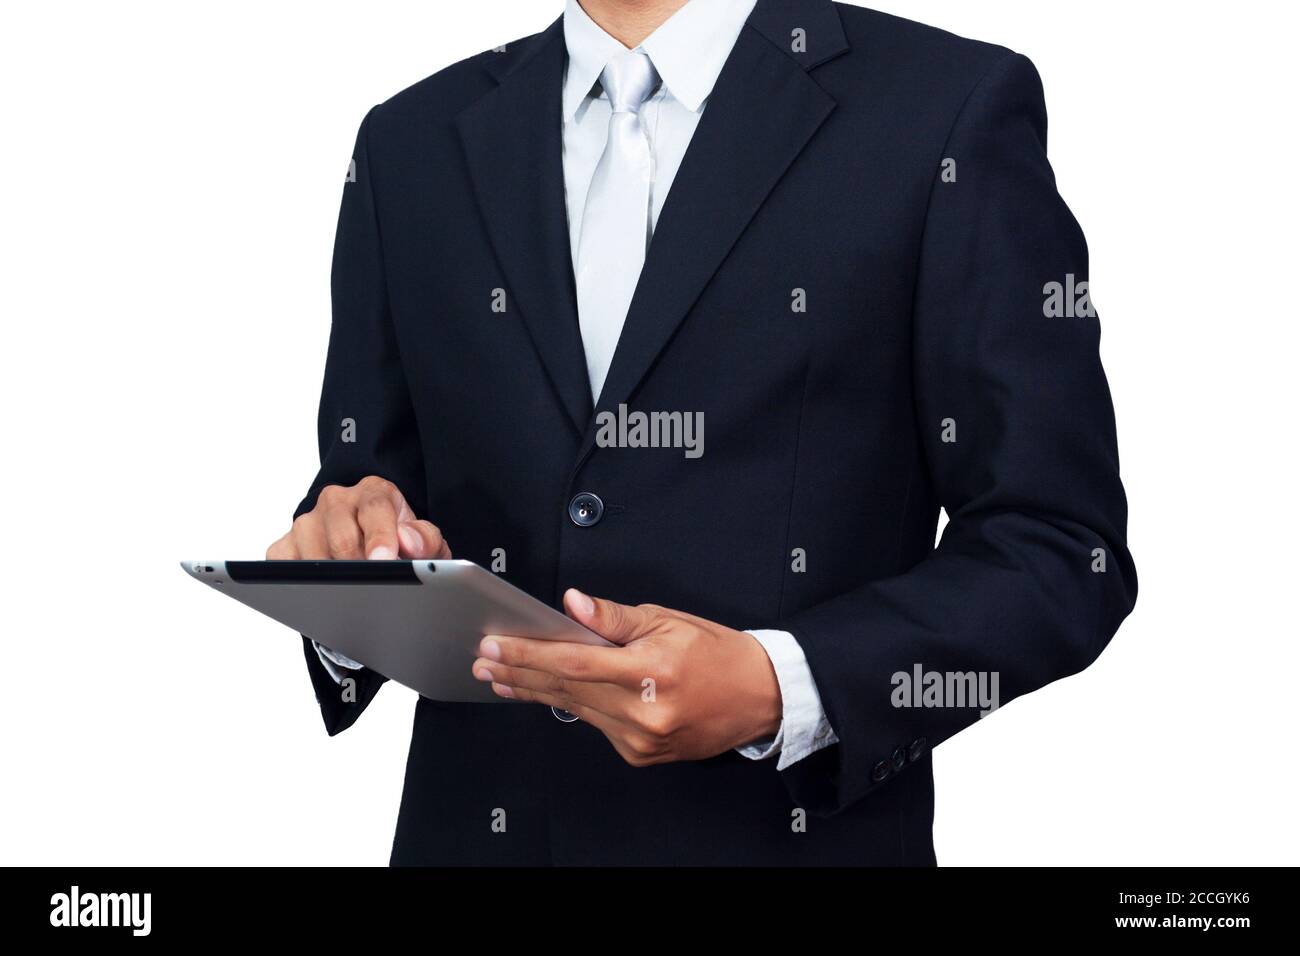 Asiatische Geschäftsmann in Anzug formale tragen mit Tablet-Computer isoliert auf weißem Hintergrund mit Clipping Pfad. Asien männliches Modell in seinen 30er Jahren Stockfoto